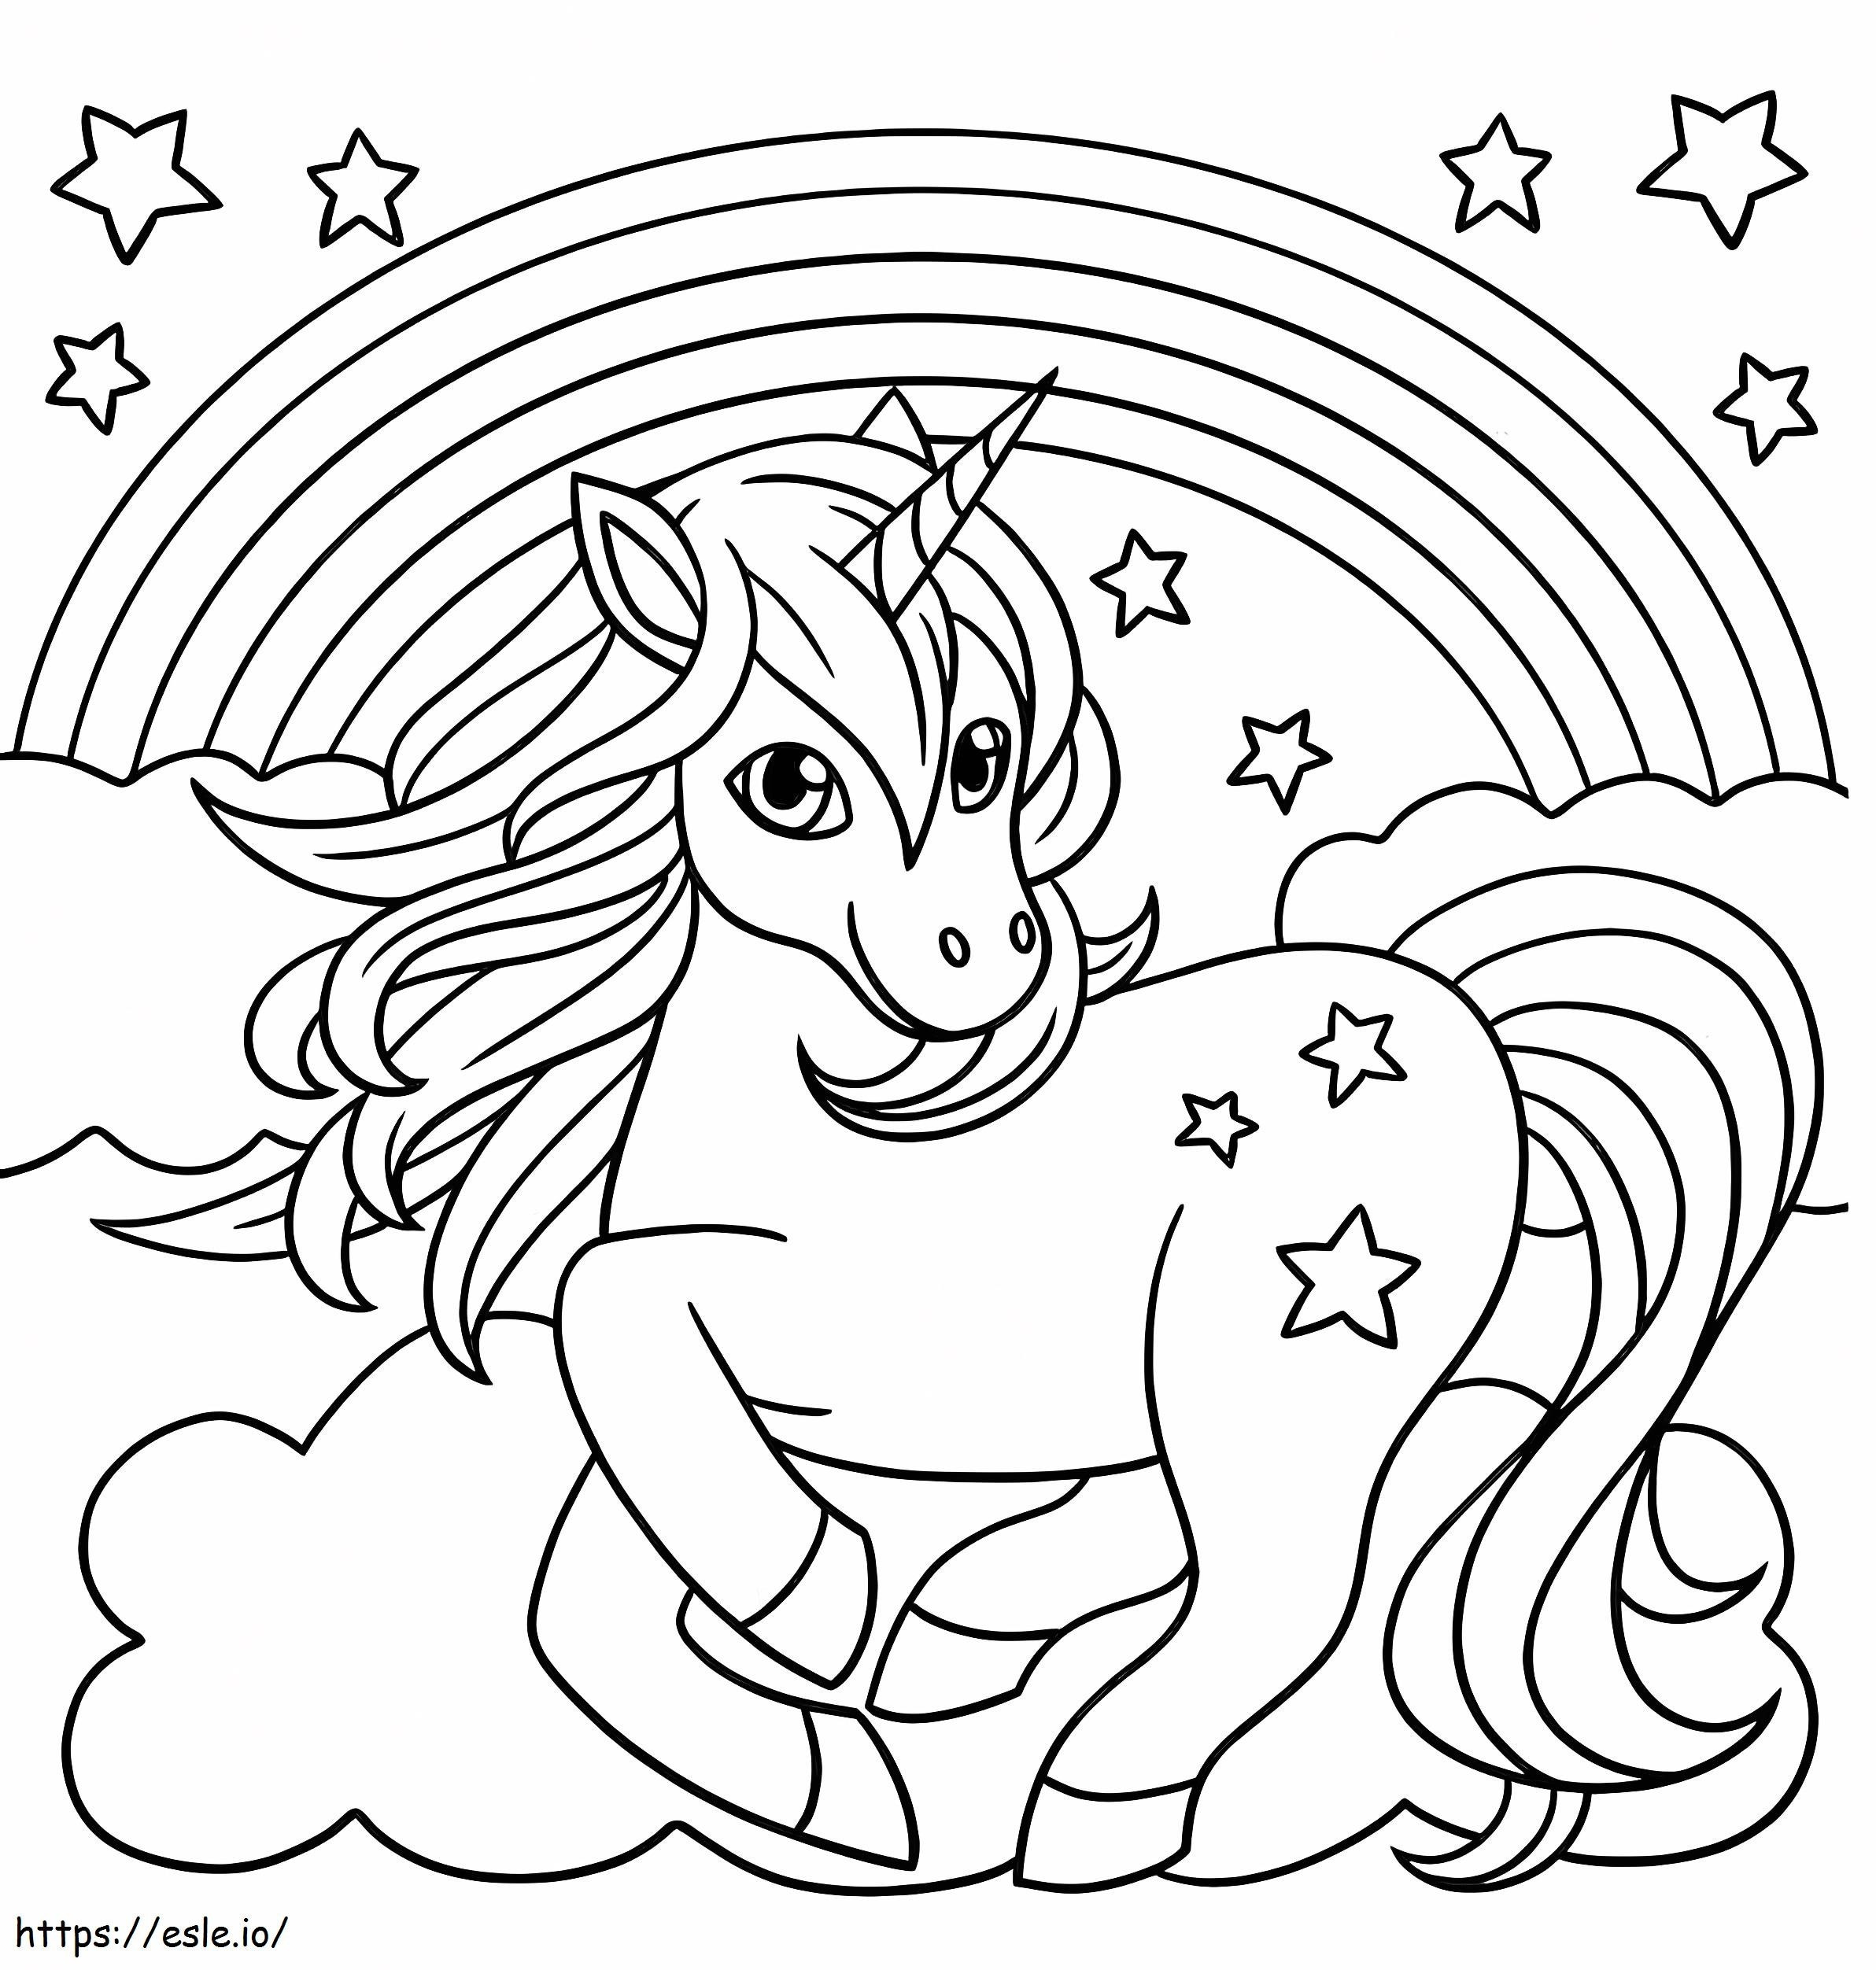 Unicorno sorridente con arcobaleno e stelle da colorare